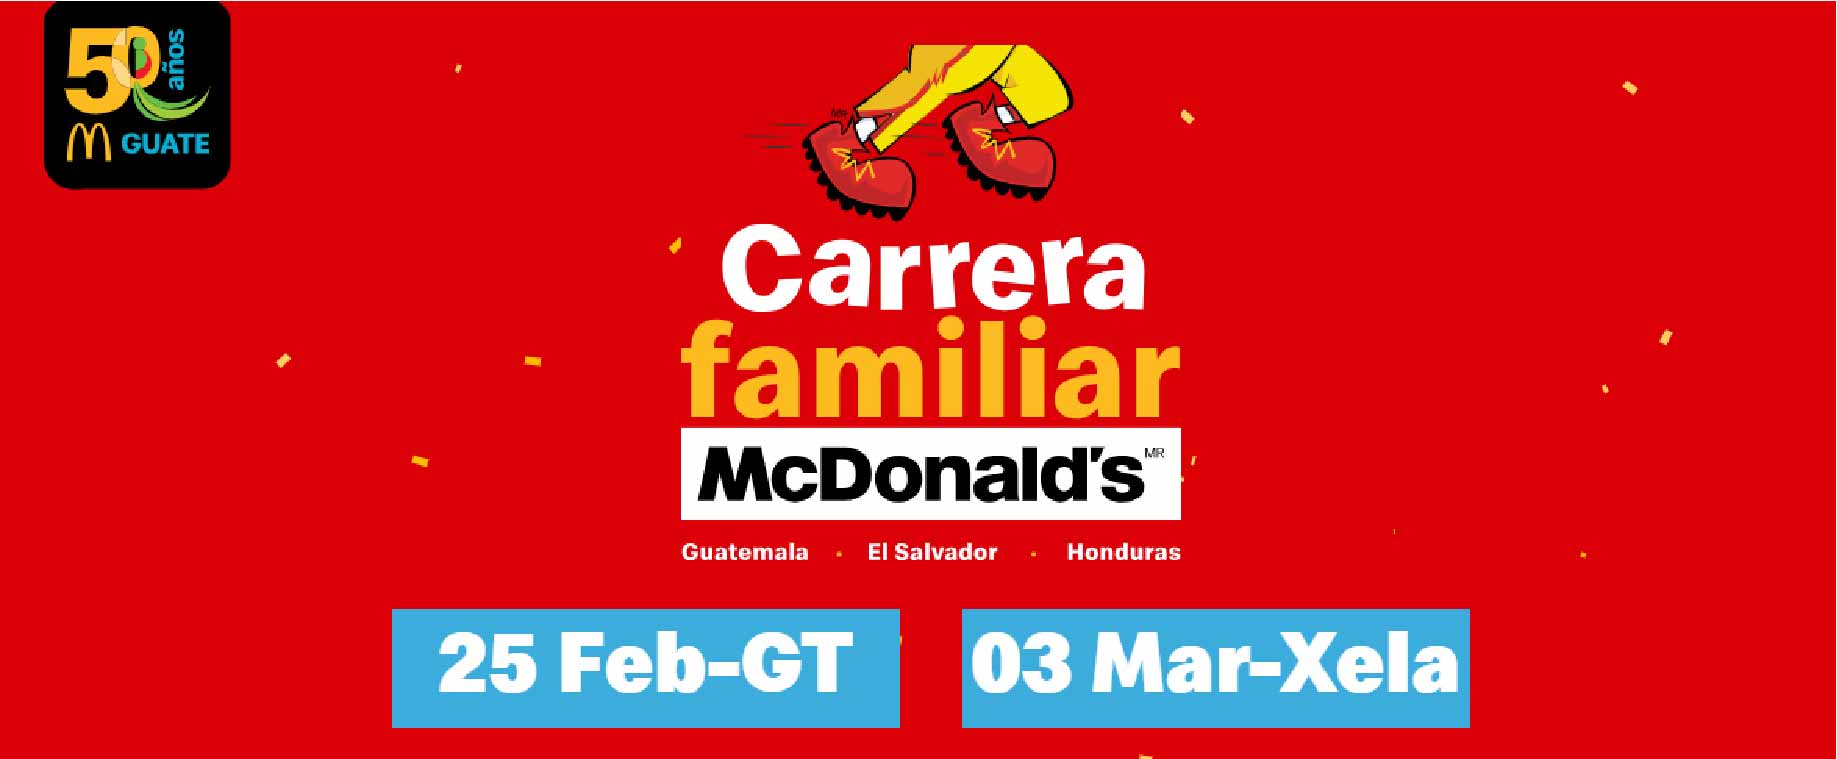 Carrera Familiar McDonald's Guatemala